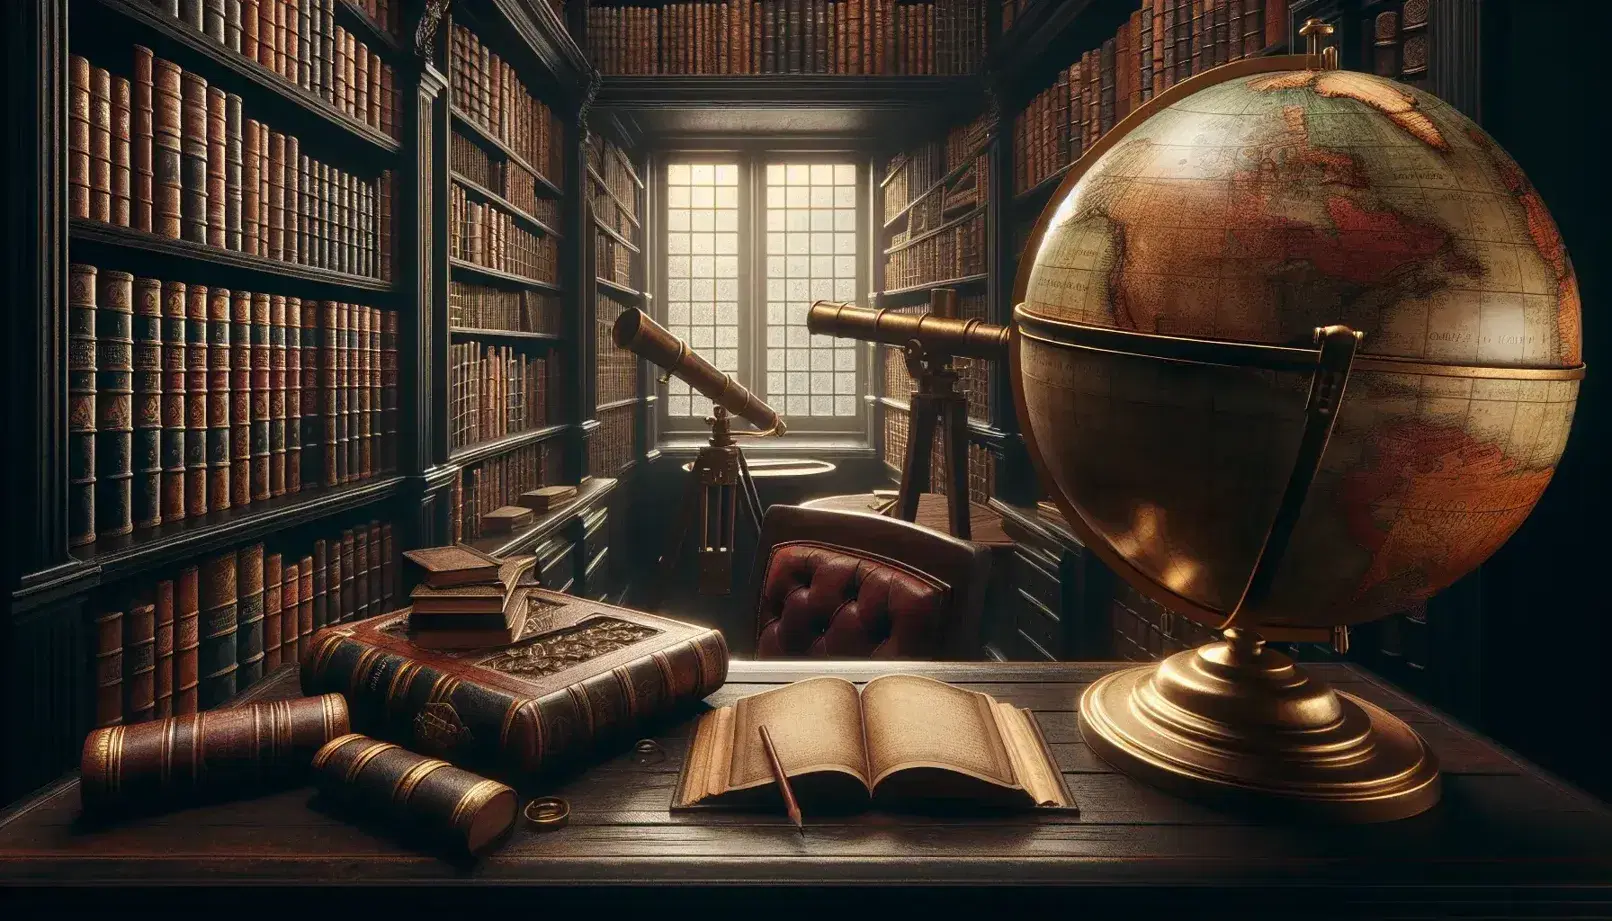 Biblioteca antigua con estantes de madera oscuros llenos de libros encuadernados en cuero, mesa con globo terráqueo antiguo y telescopio de latón, silla con cojín rojo y cuaderno abierto.